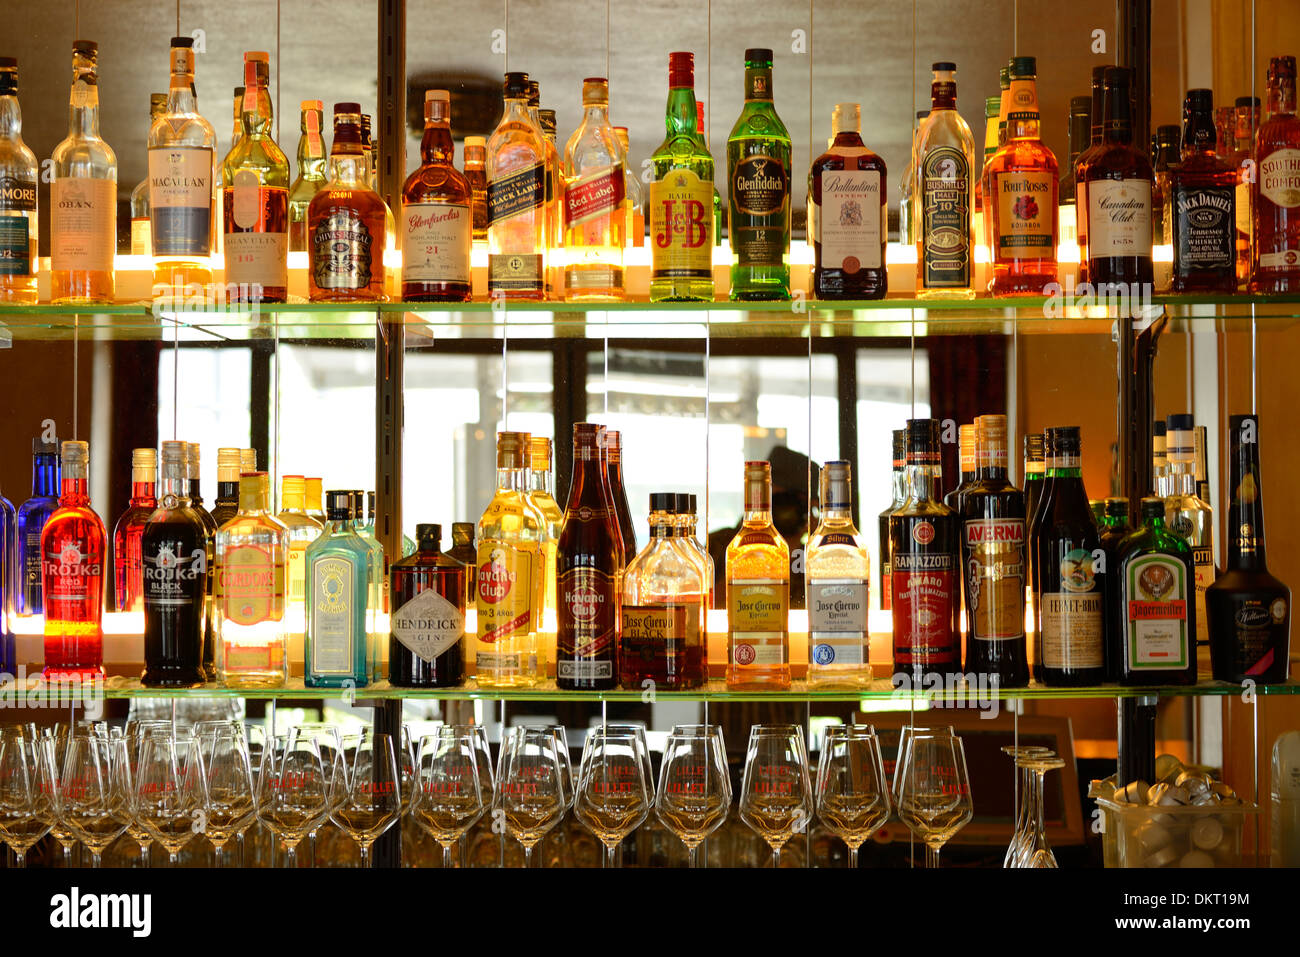 Europa, Schweiz, St.Gallen, Bar, Flaschen, Glas, Getränke, Alkohol, Zähler  Stockfotografie - Alamy